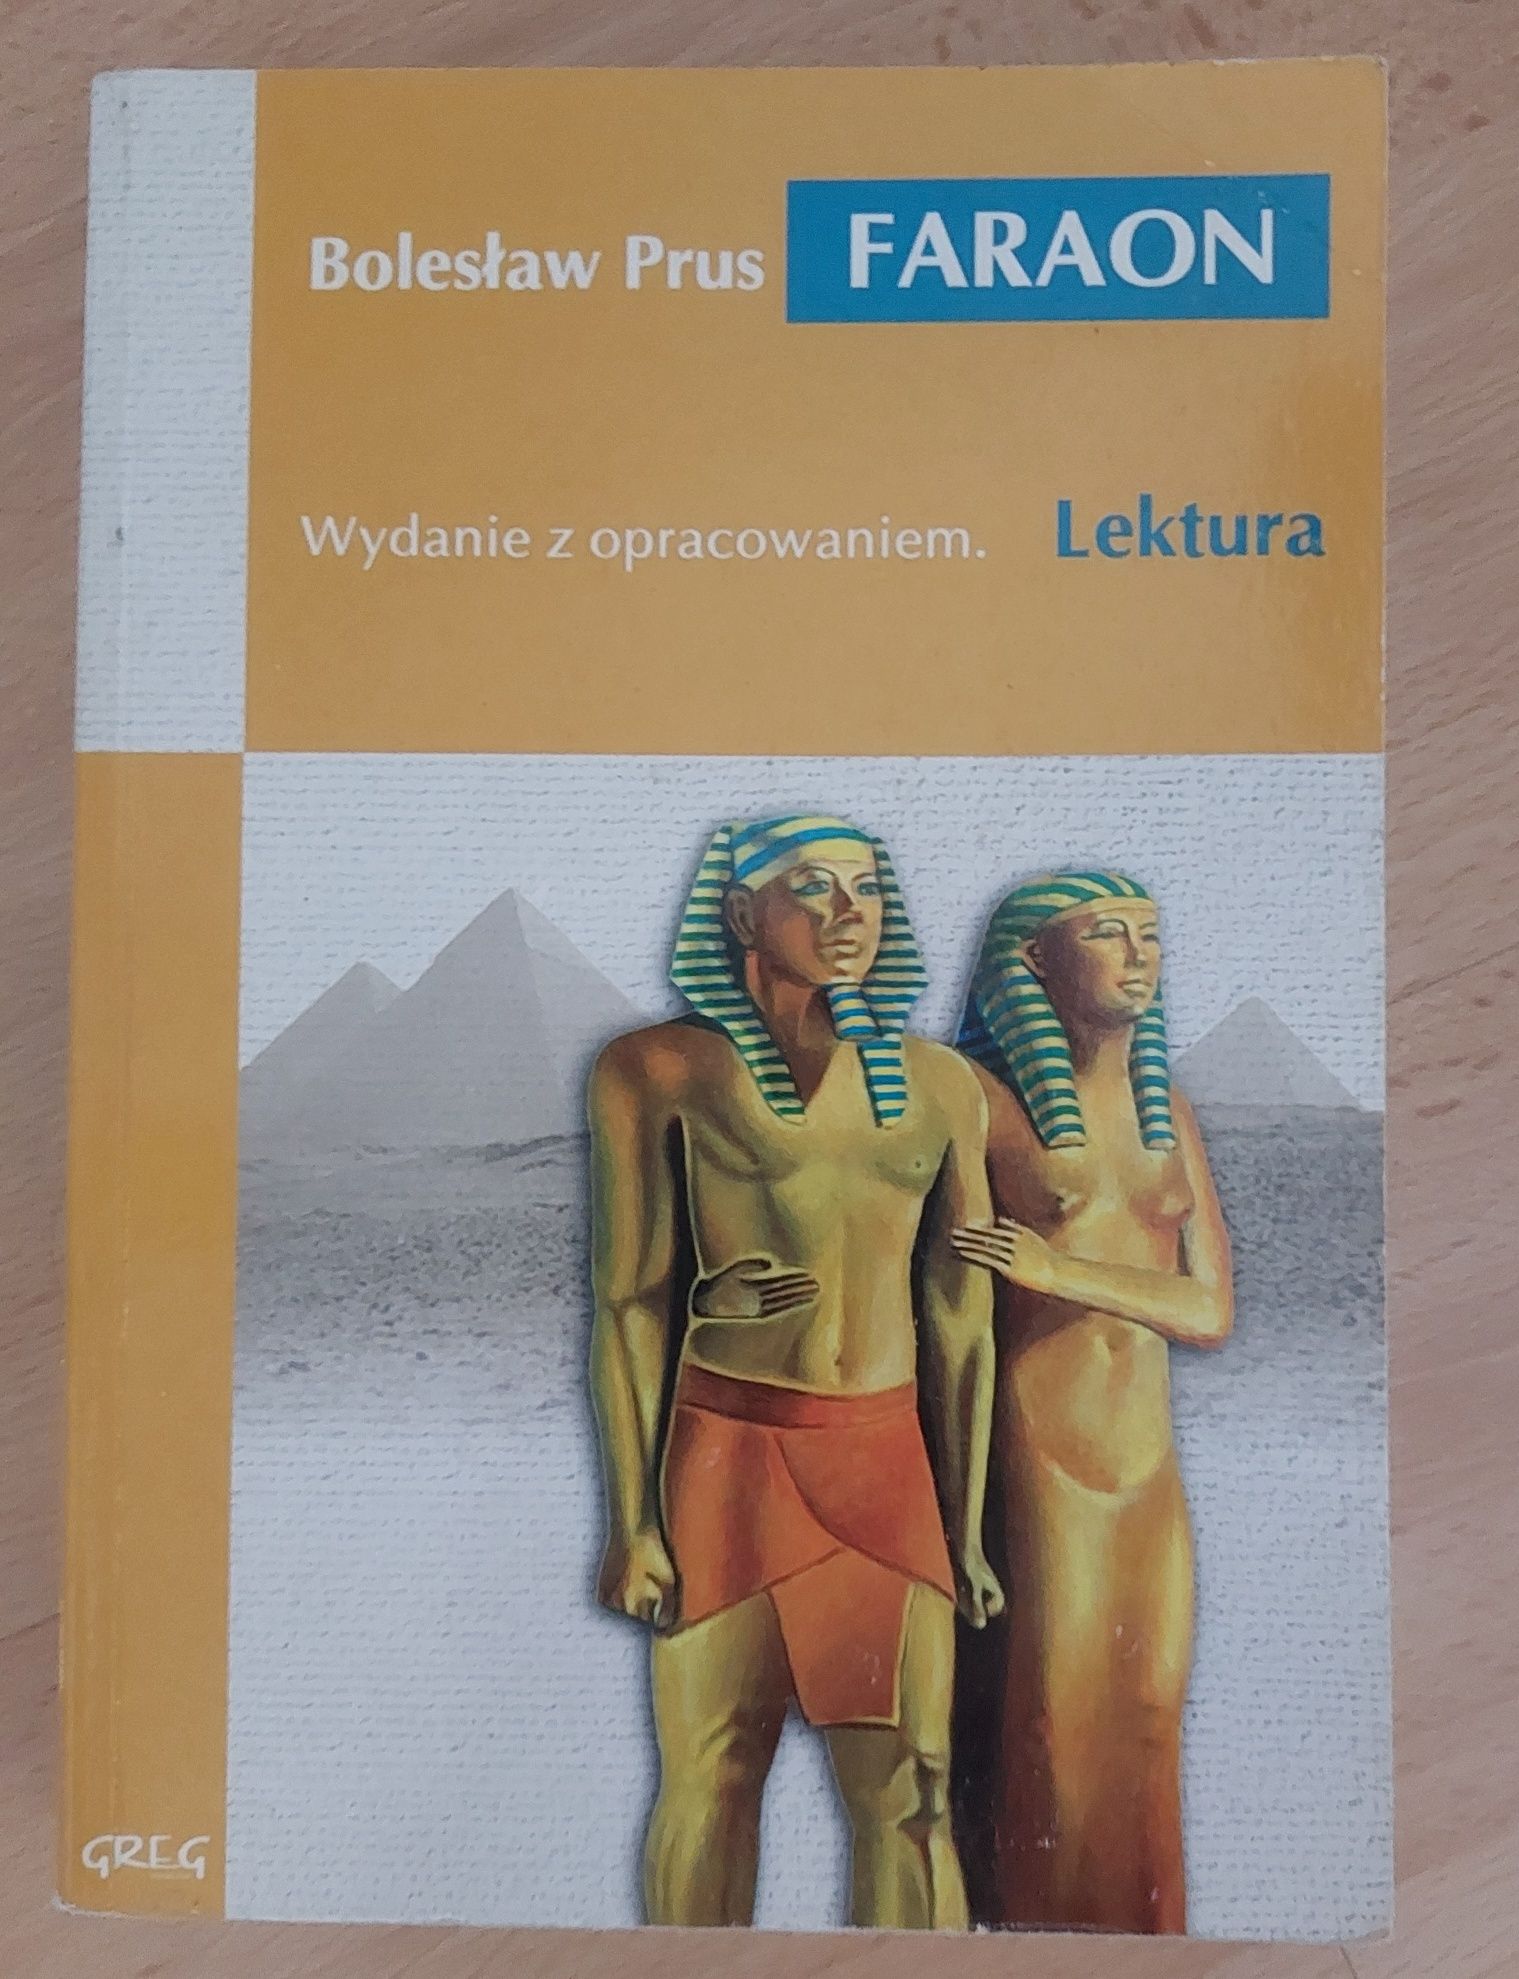 Faraon z opracowaniem Bolesław Prus